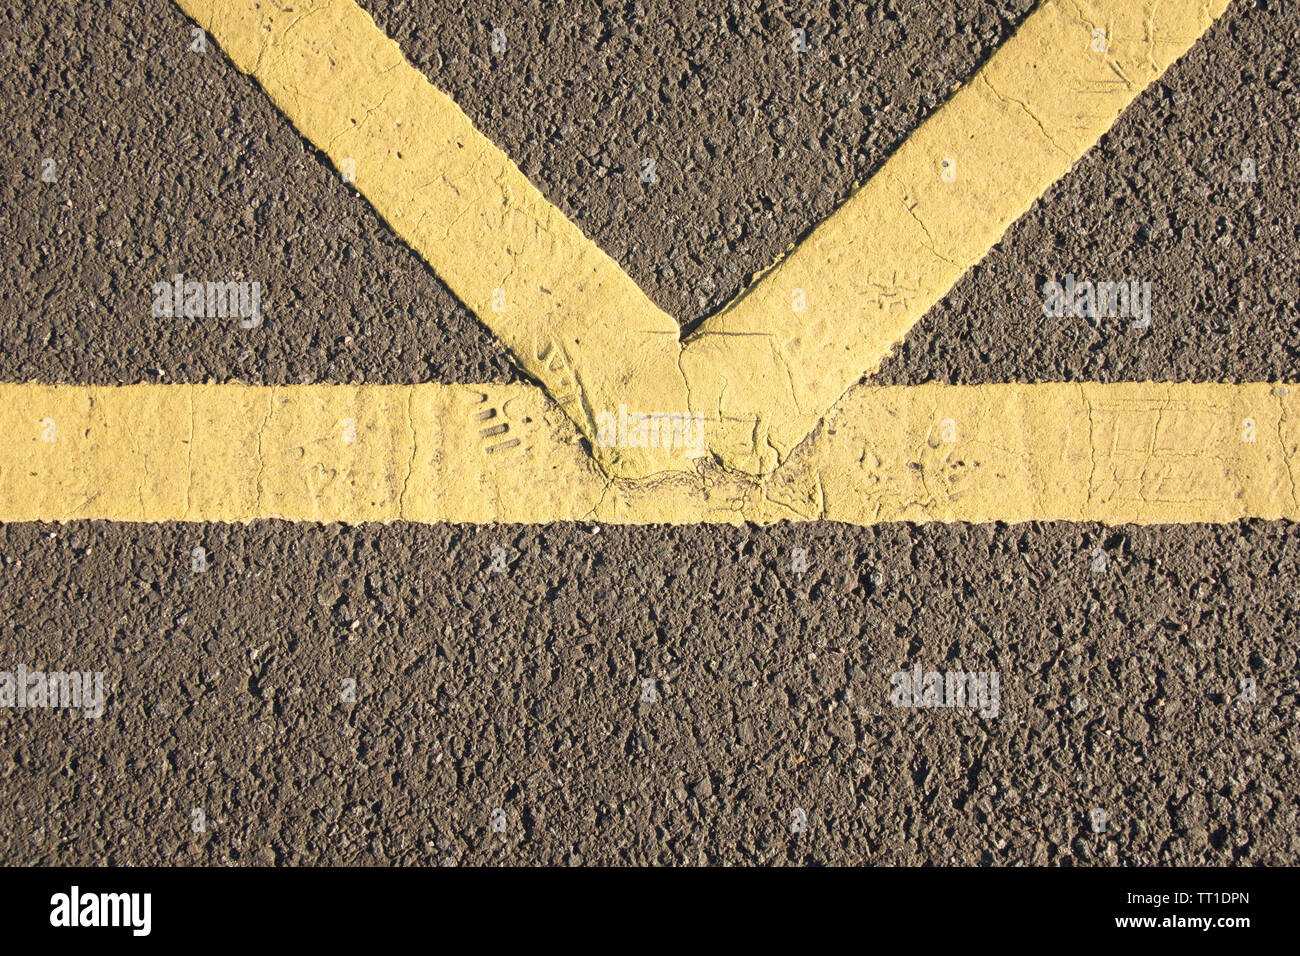 Nahaufnahme des gelben Fahrbahnmarkierungen im Auto Park, Edinburgh, Schottland Stockfoto